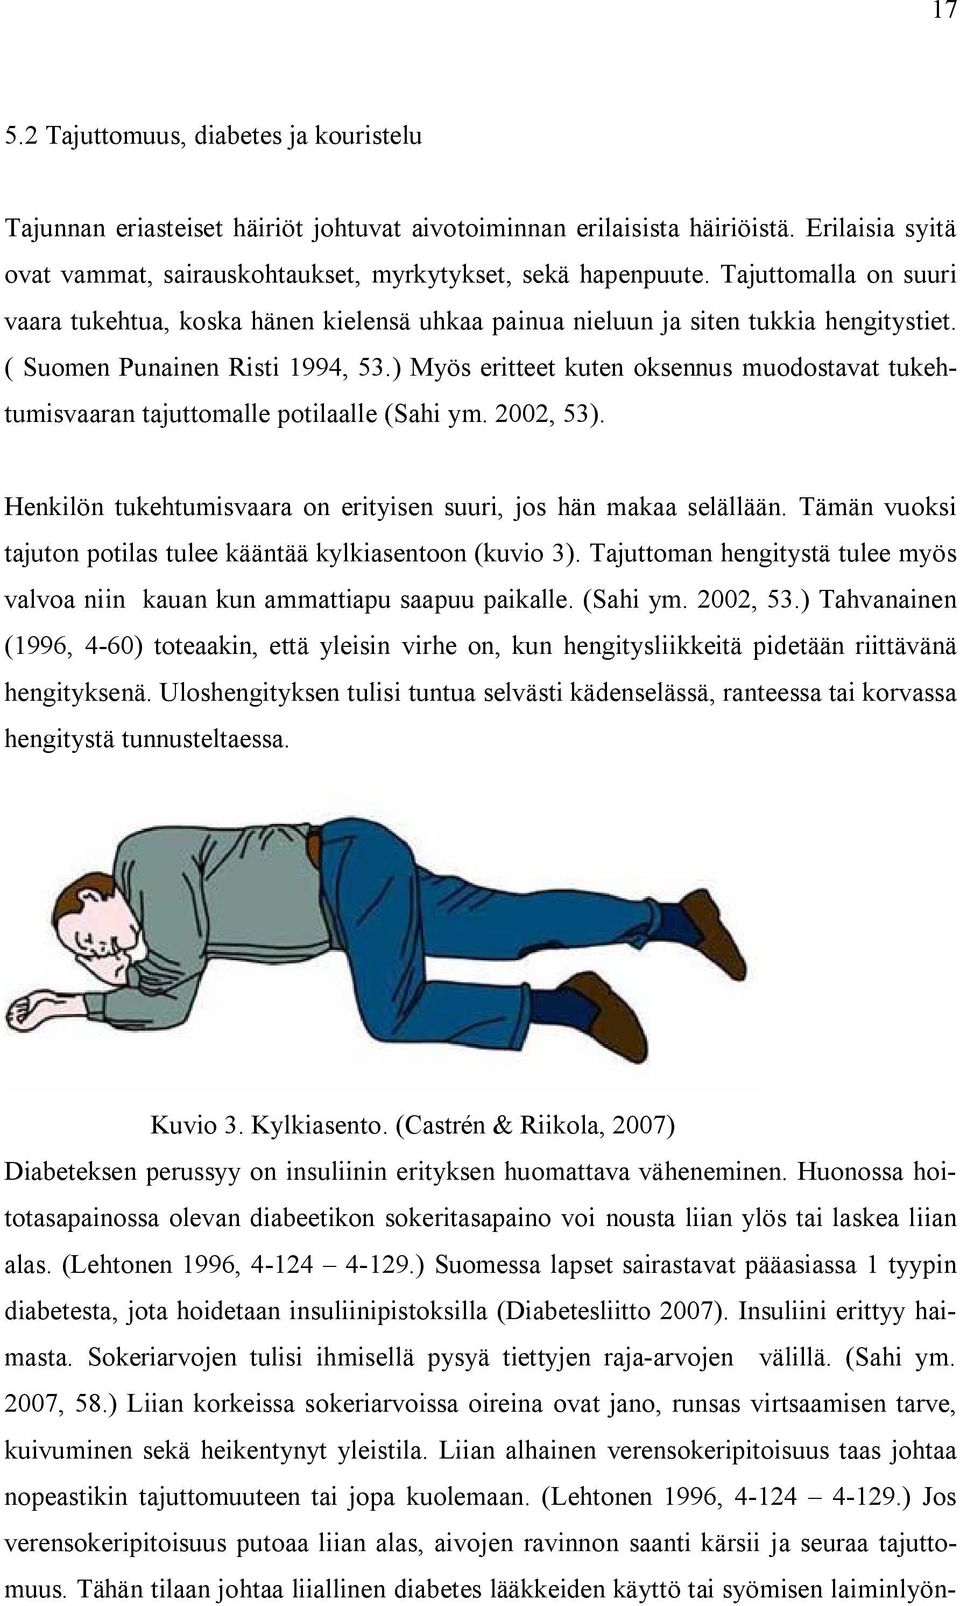 ) Myös eritteet kuten oksennus muodostavat tukehtumisvaaran tajuttomalle potilaalle (Sahi ym. 2002, 53). Henkilön tukehtumisvaara on erityisen suuri, jos hän makaa selällään.